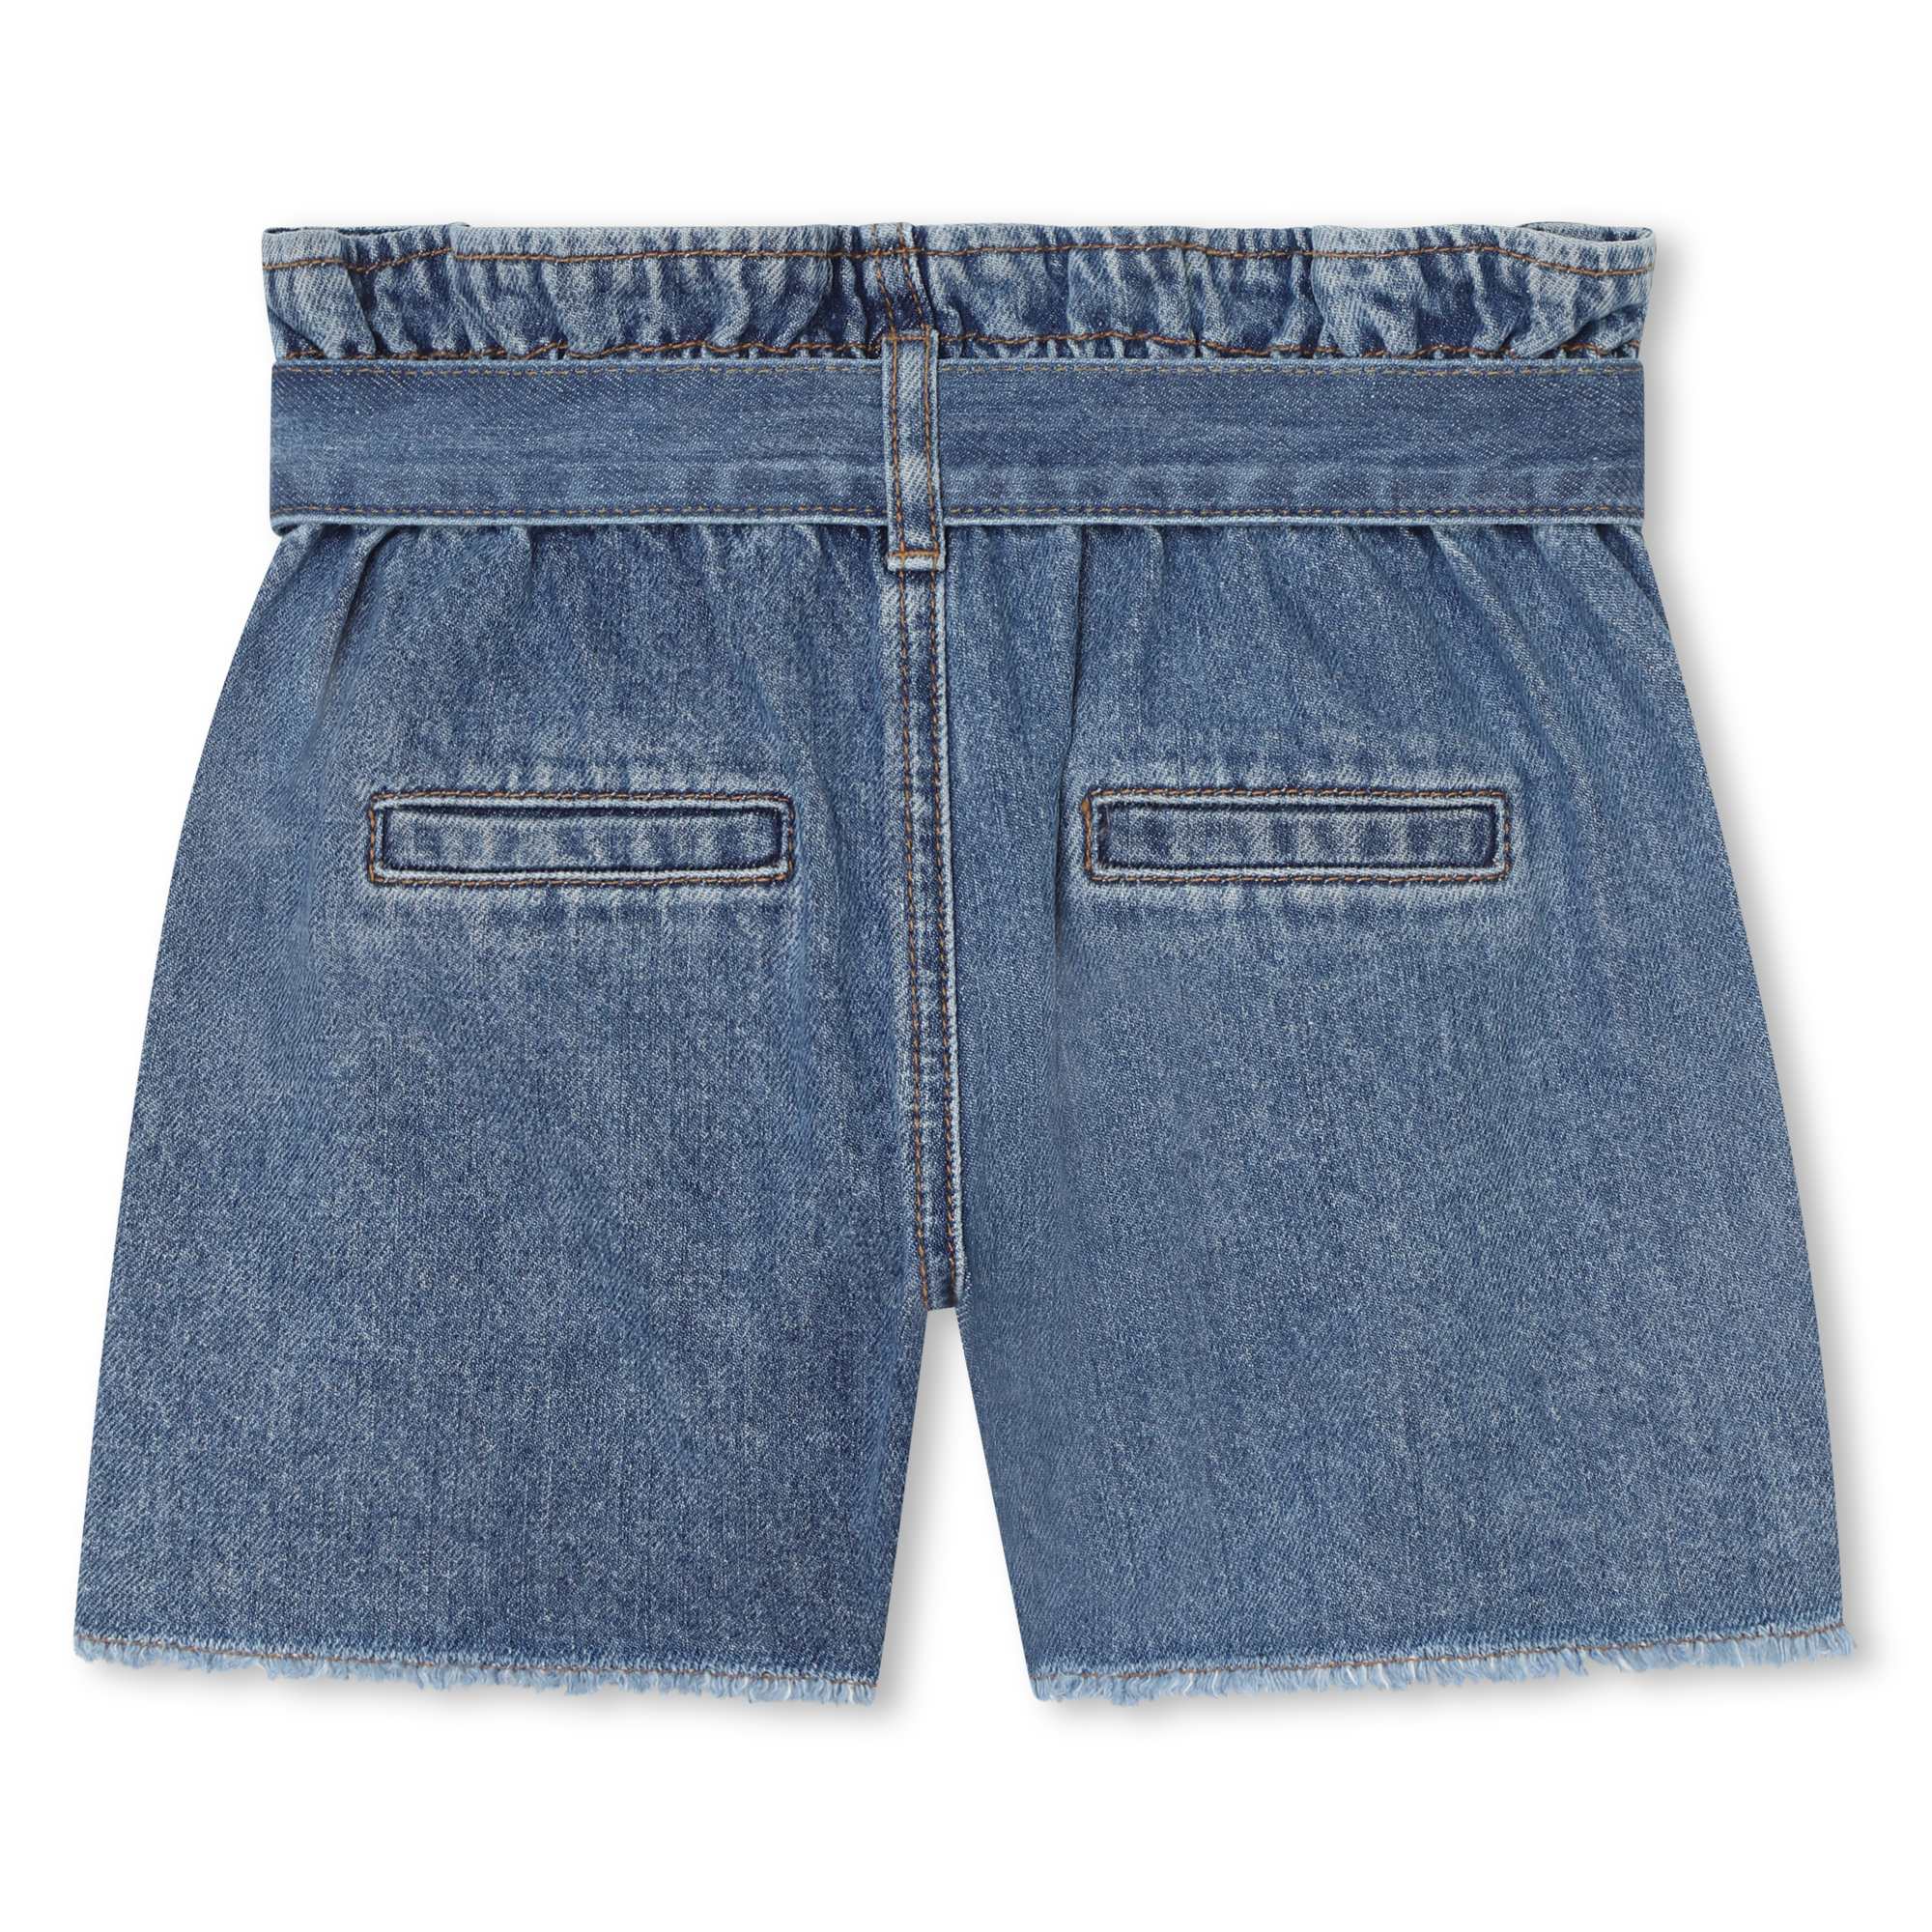 Jeans-shorts mit fransensaum SONIA RYKIEL Für MÄDCHEN